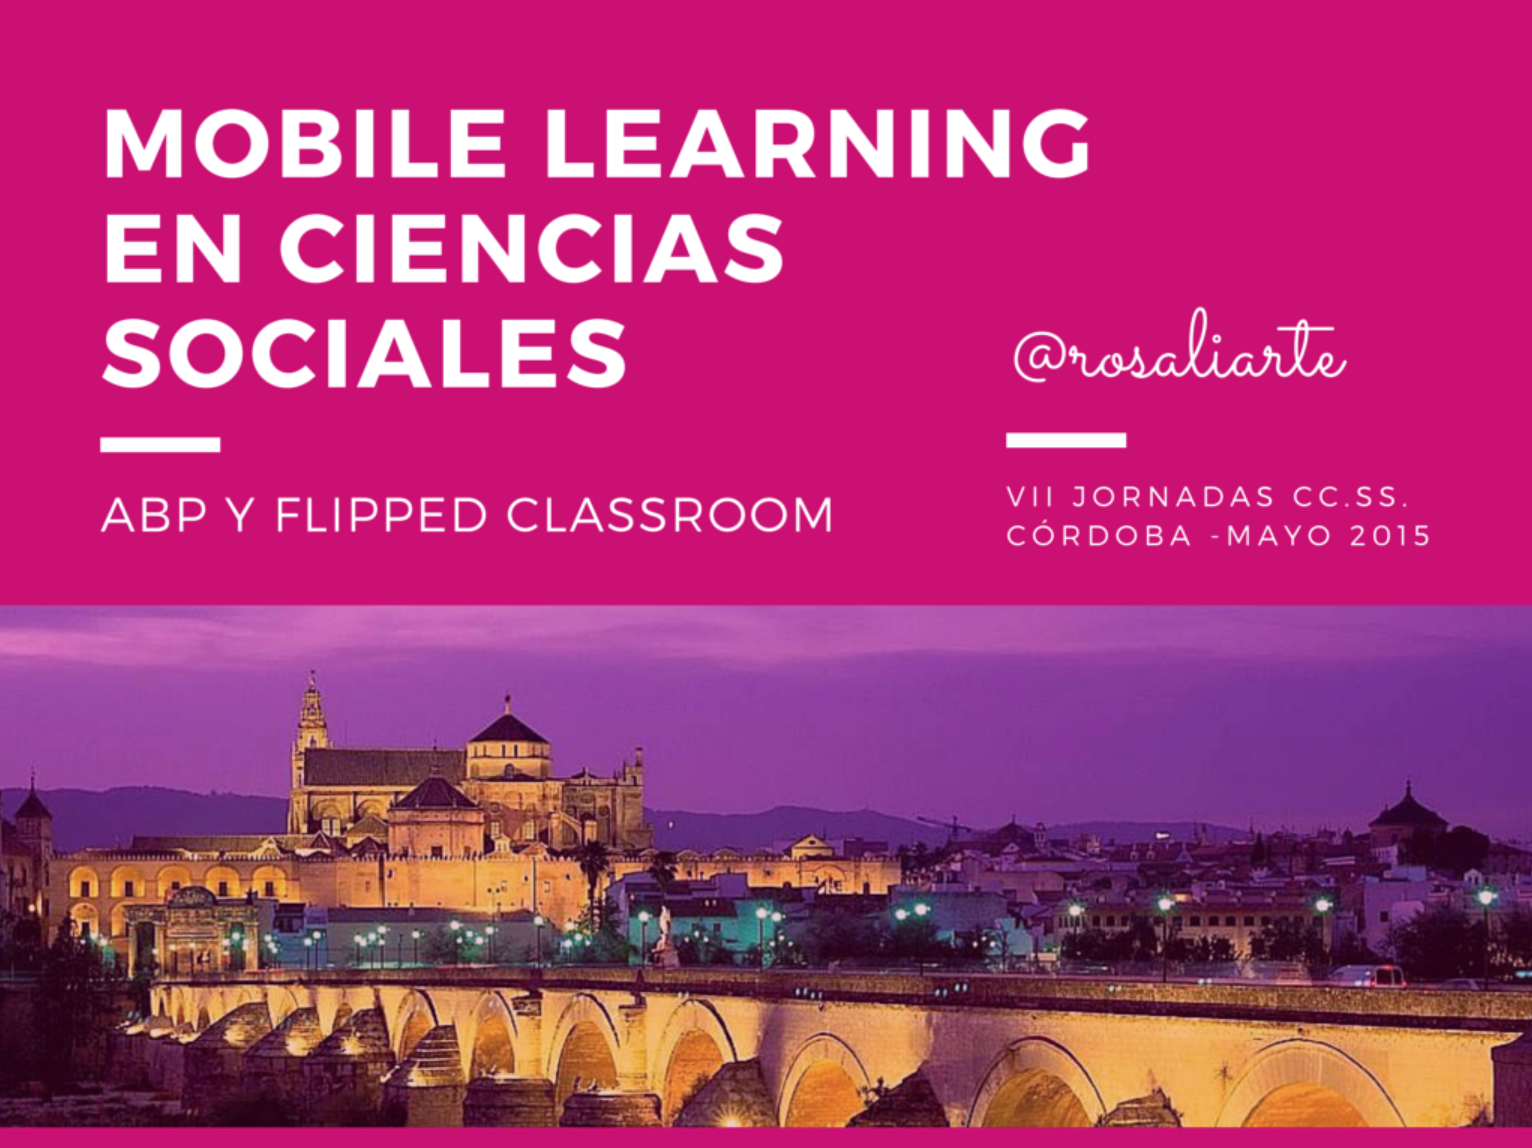 Mobile Learning en Ciencias Sociales, Ponencia en Córdoba